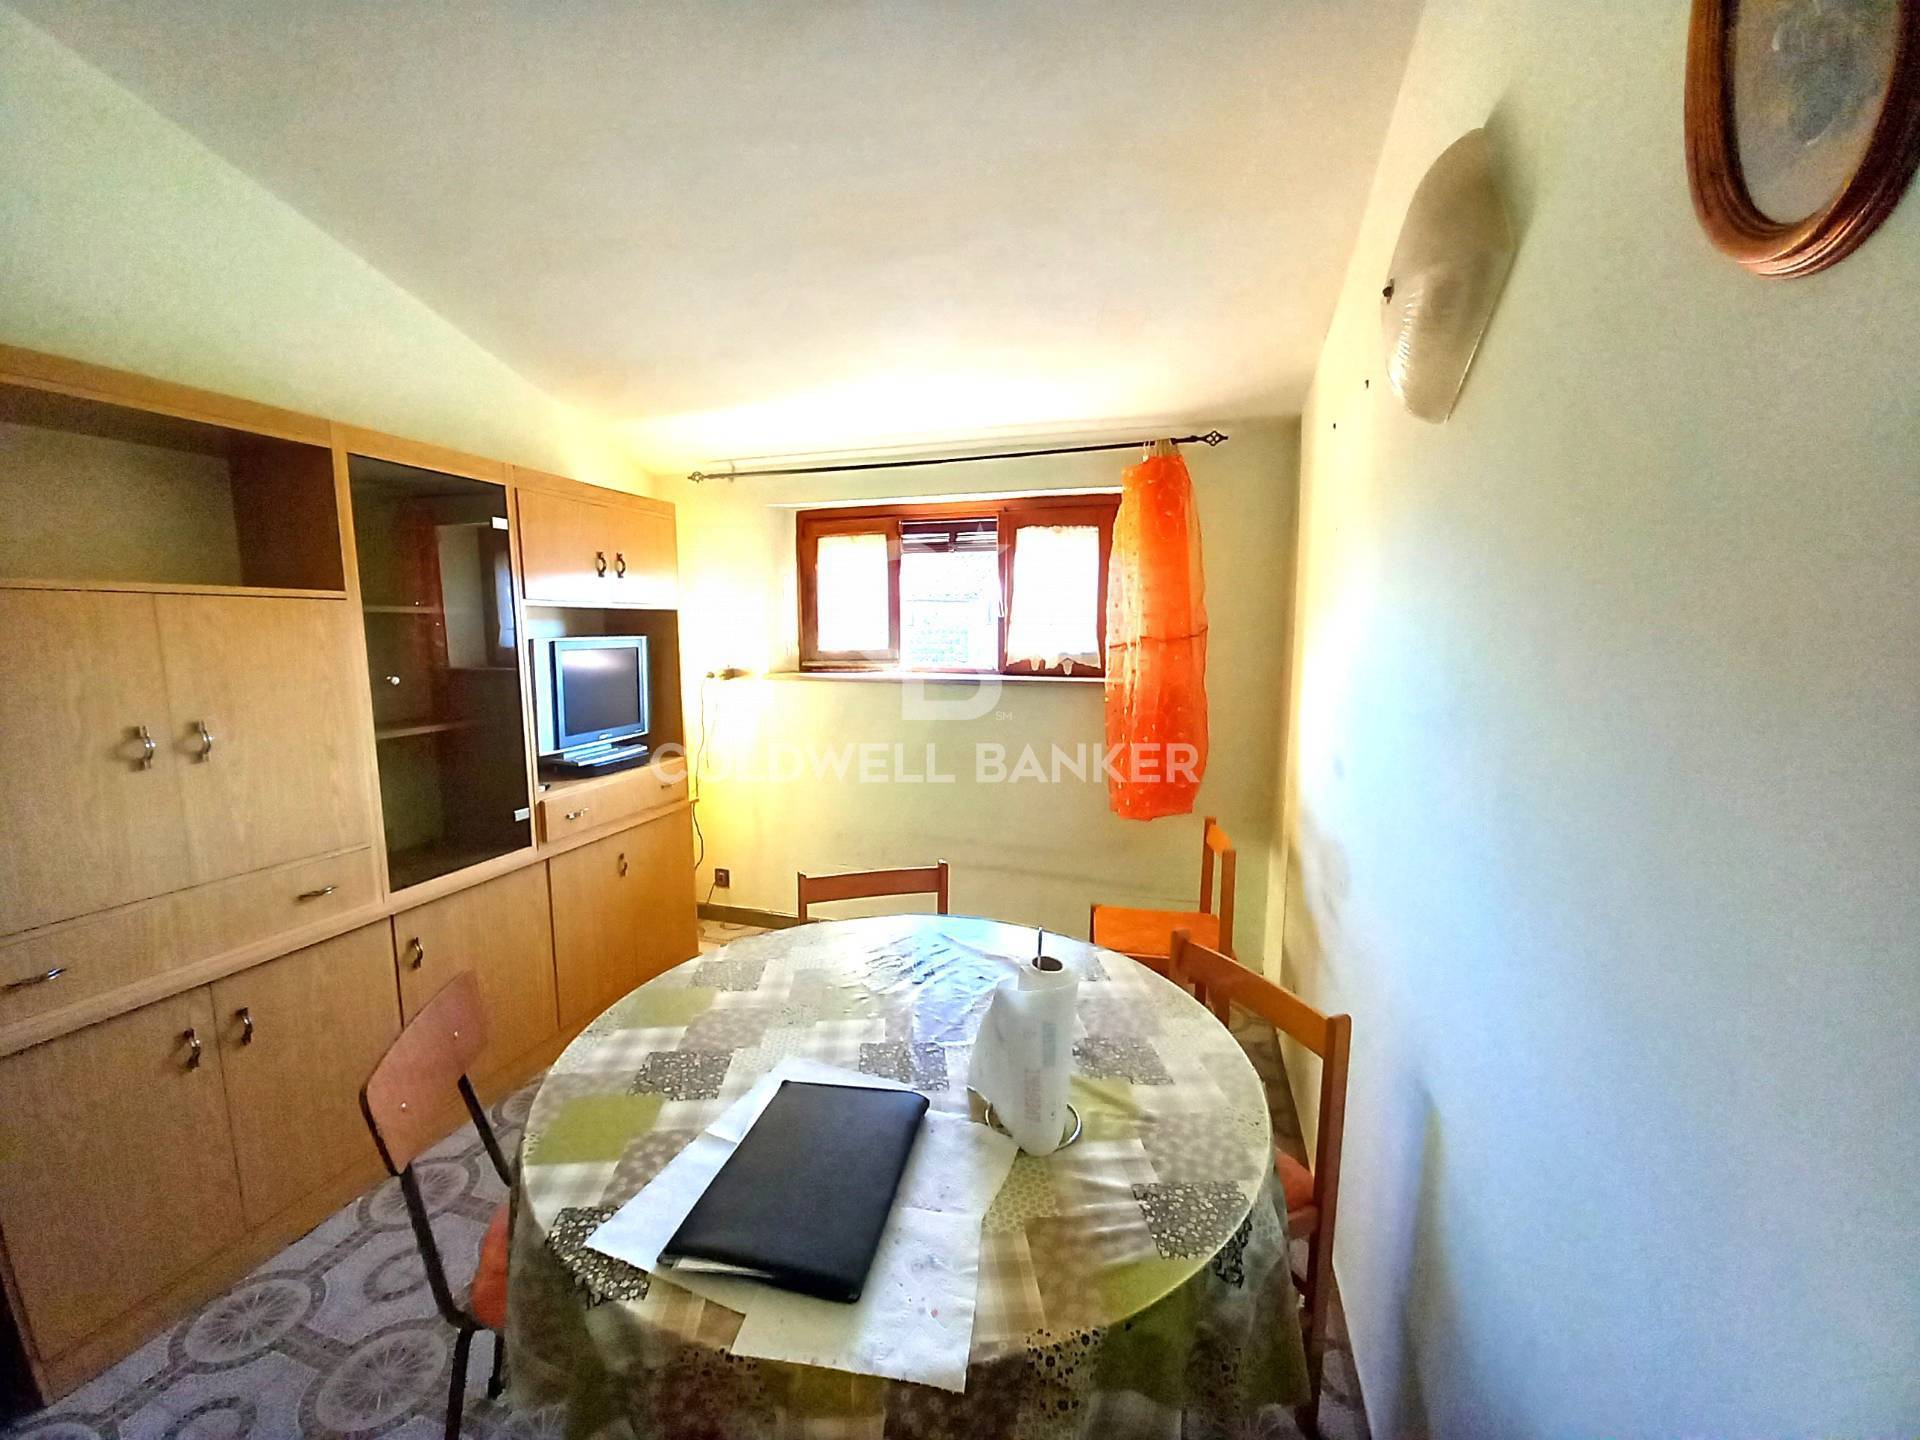 Appartamento in vendita a Gallese, 4 locali, prezzo € 23.000 | PortaleAgenzieImmobiliari.it